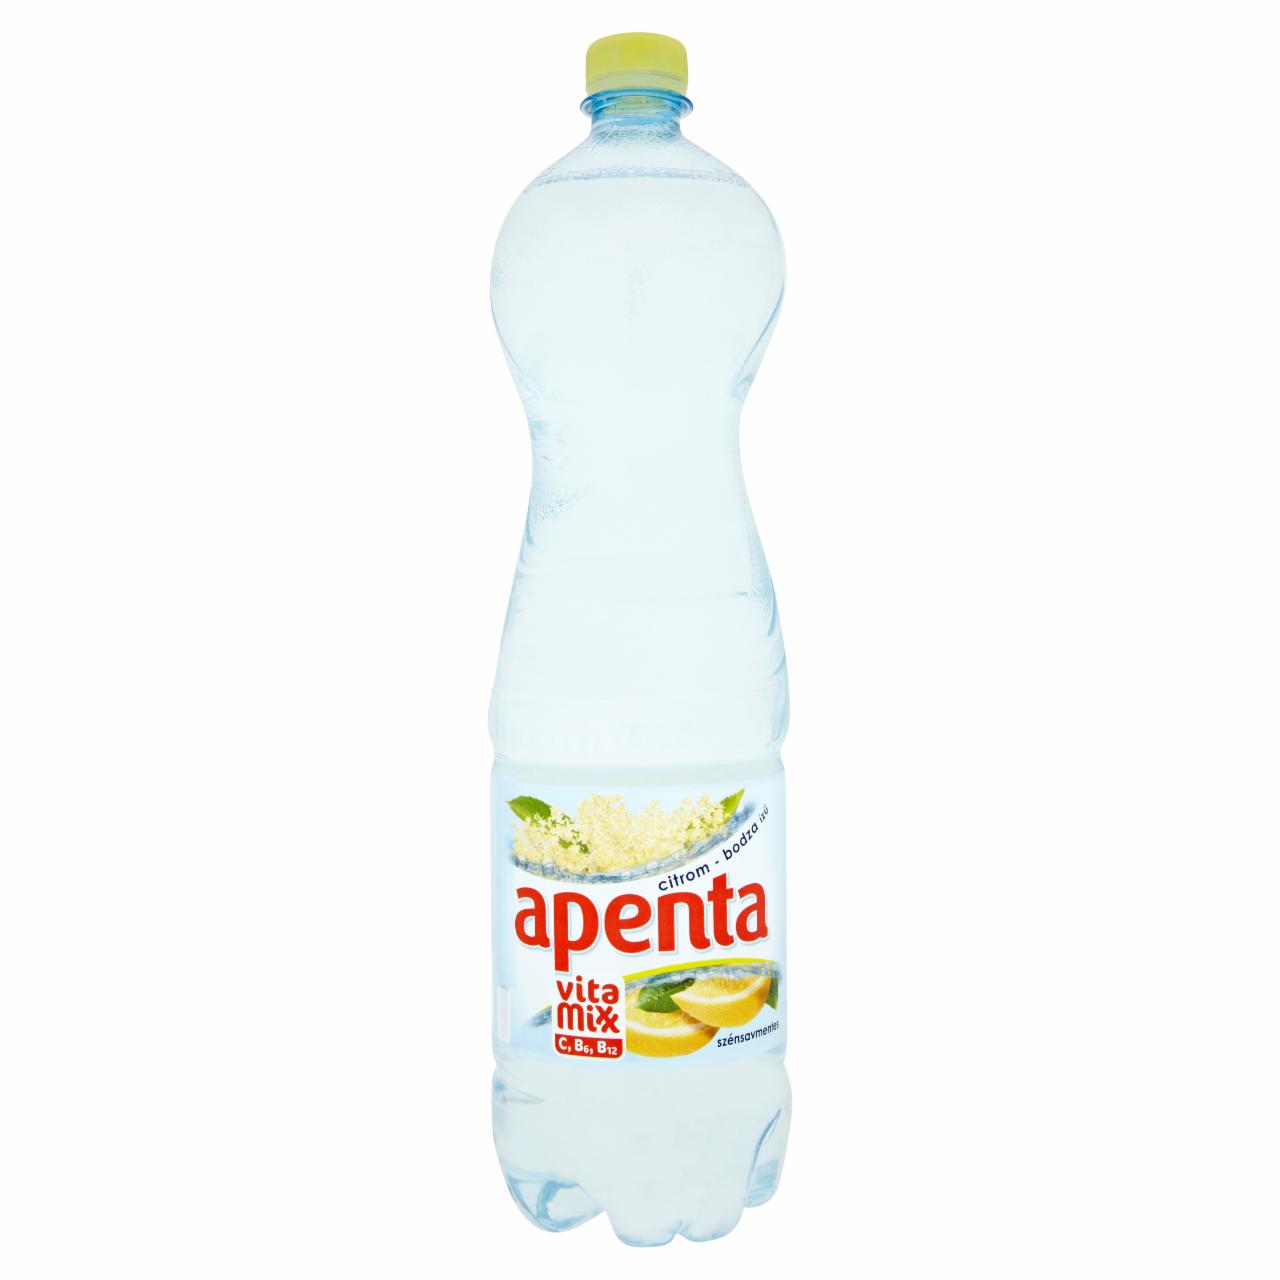 Képek - Apenta Vitamixx citrom-bodza ízű szénsavmentes energiaszegény üdítőital 1,5 l